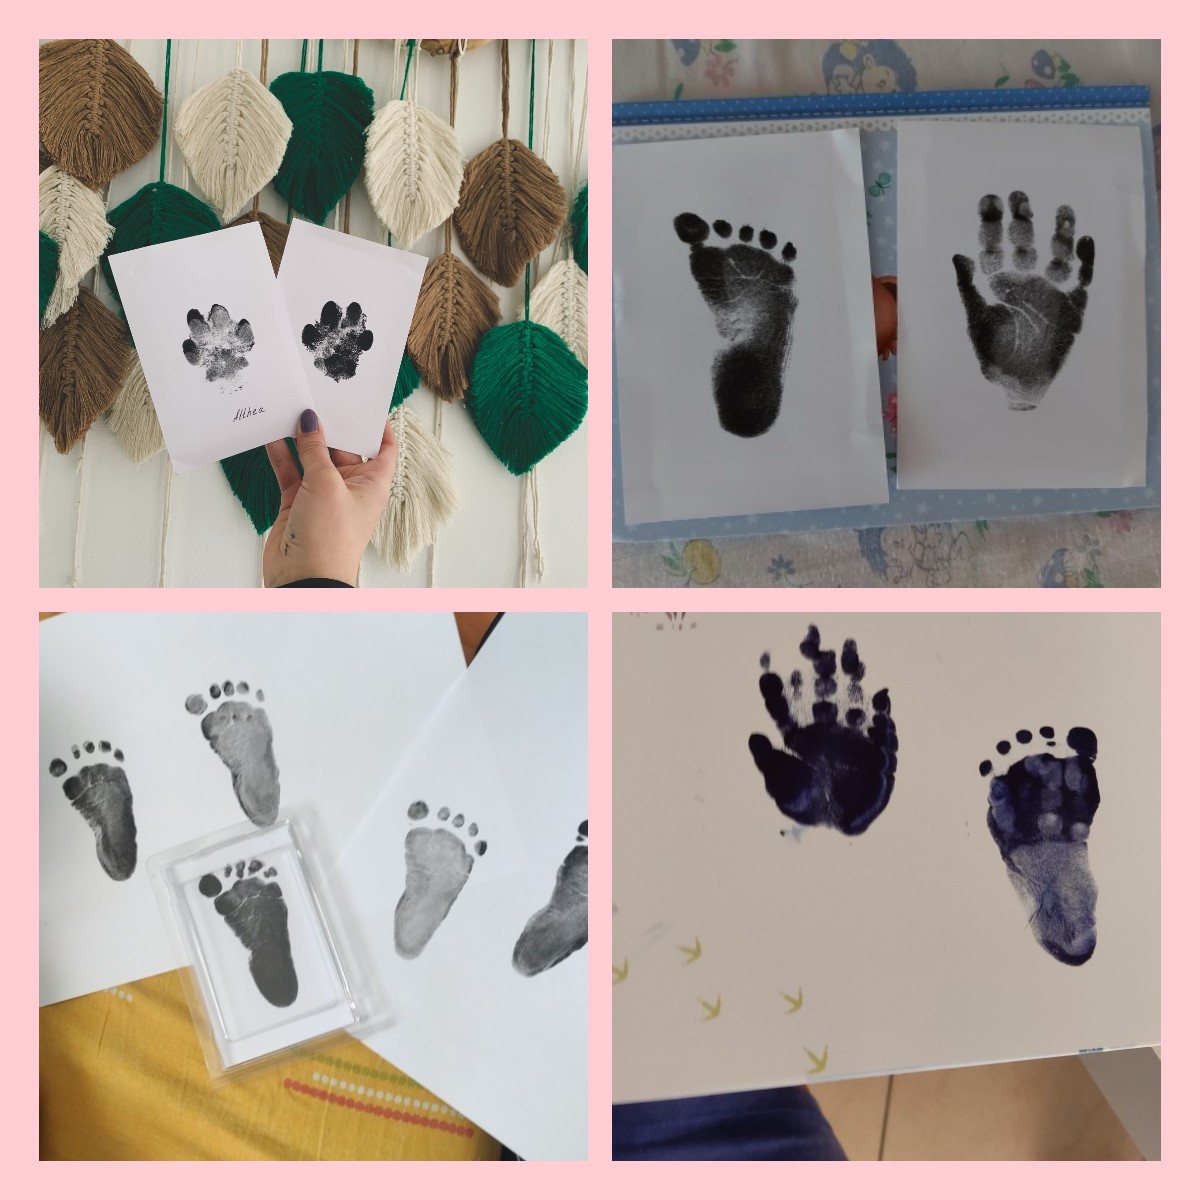 Kit de Huellas de Bebé, Seguro y Limpio, para pies y manos  Con su  almohadilla de tinta hará cientos de huellas del bebé para regalar o poner  en marcos de fotos